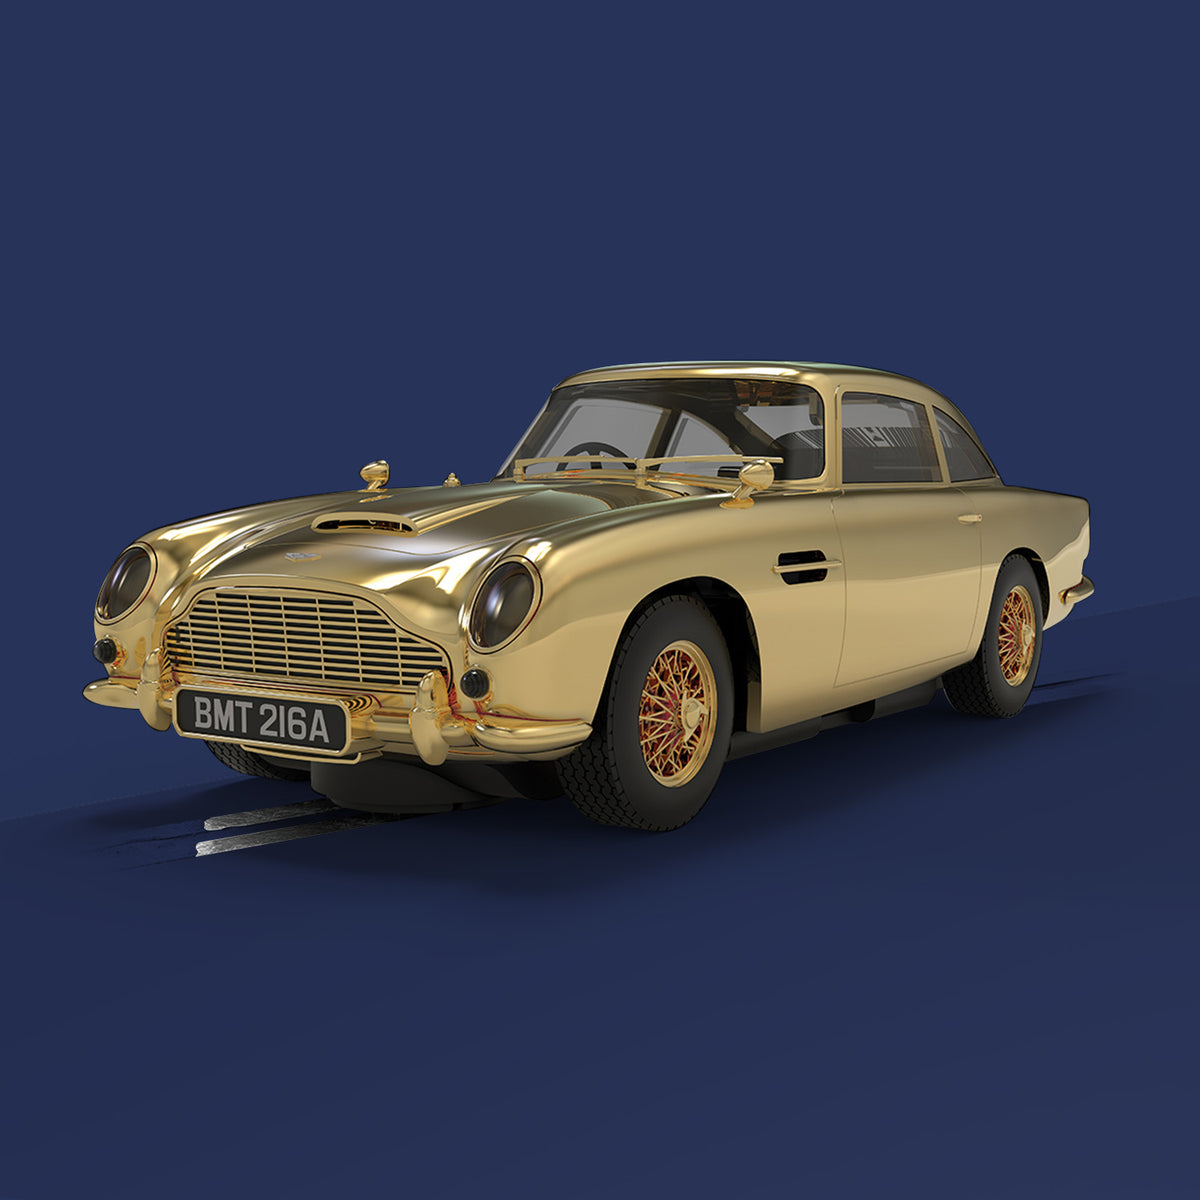 Scalextric James Bond Aston Martin DB5 Slot Car – Goldfinger 60. Jubiläum Gold Edition (Vorbestellung)